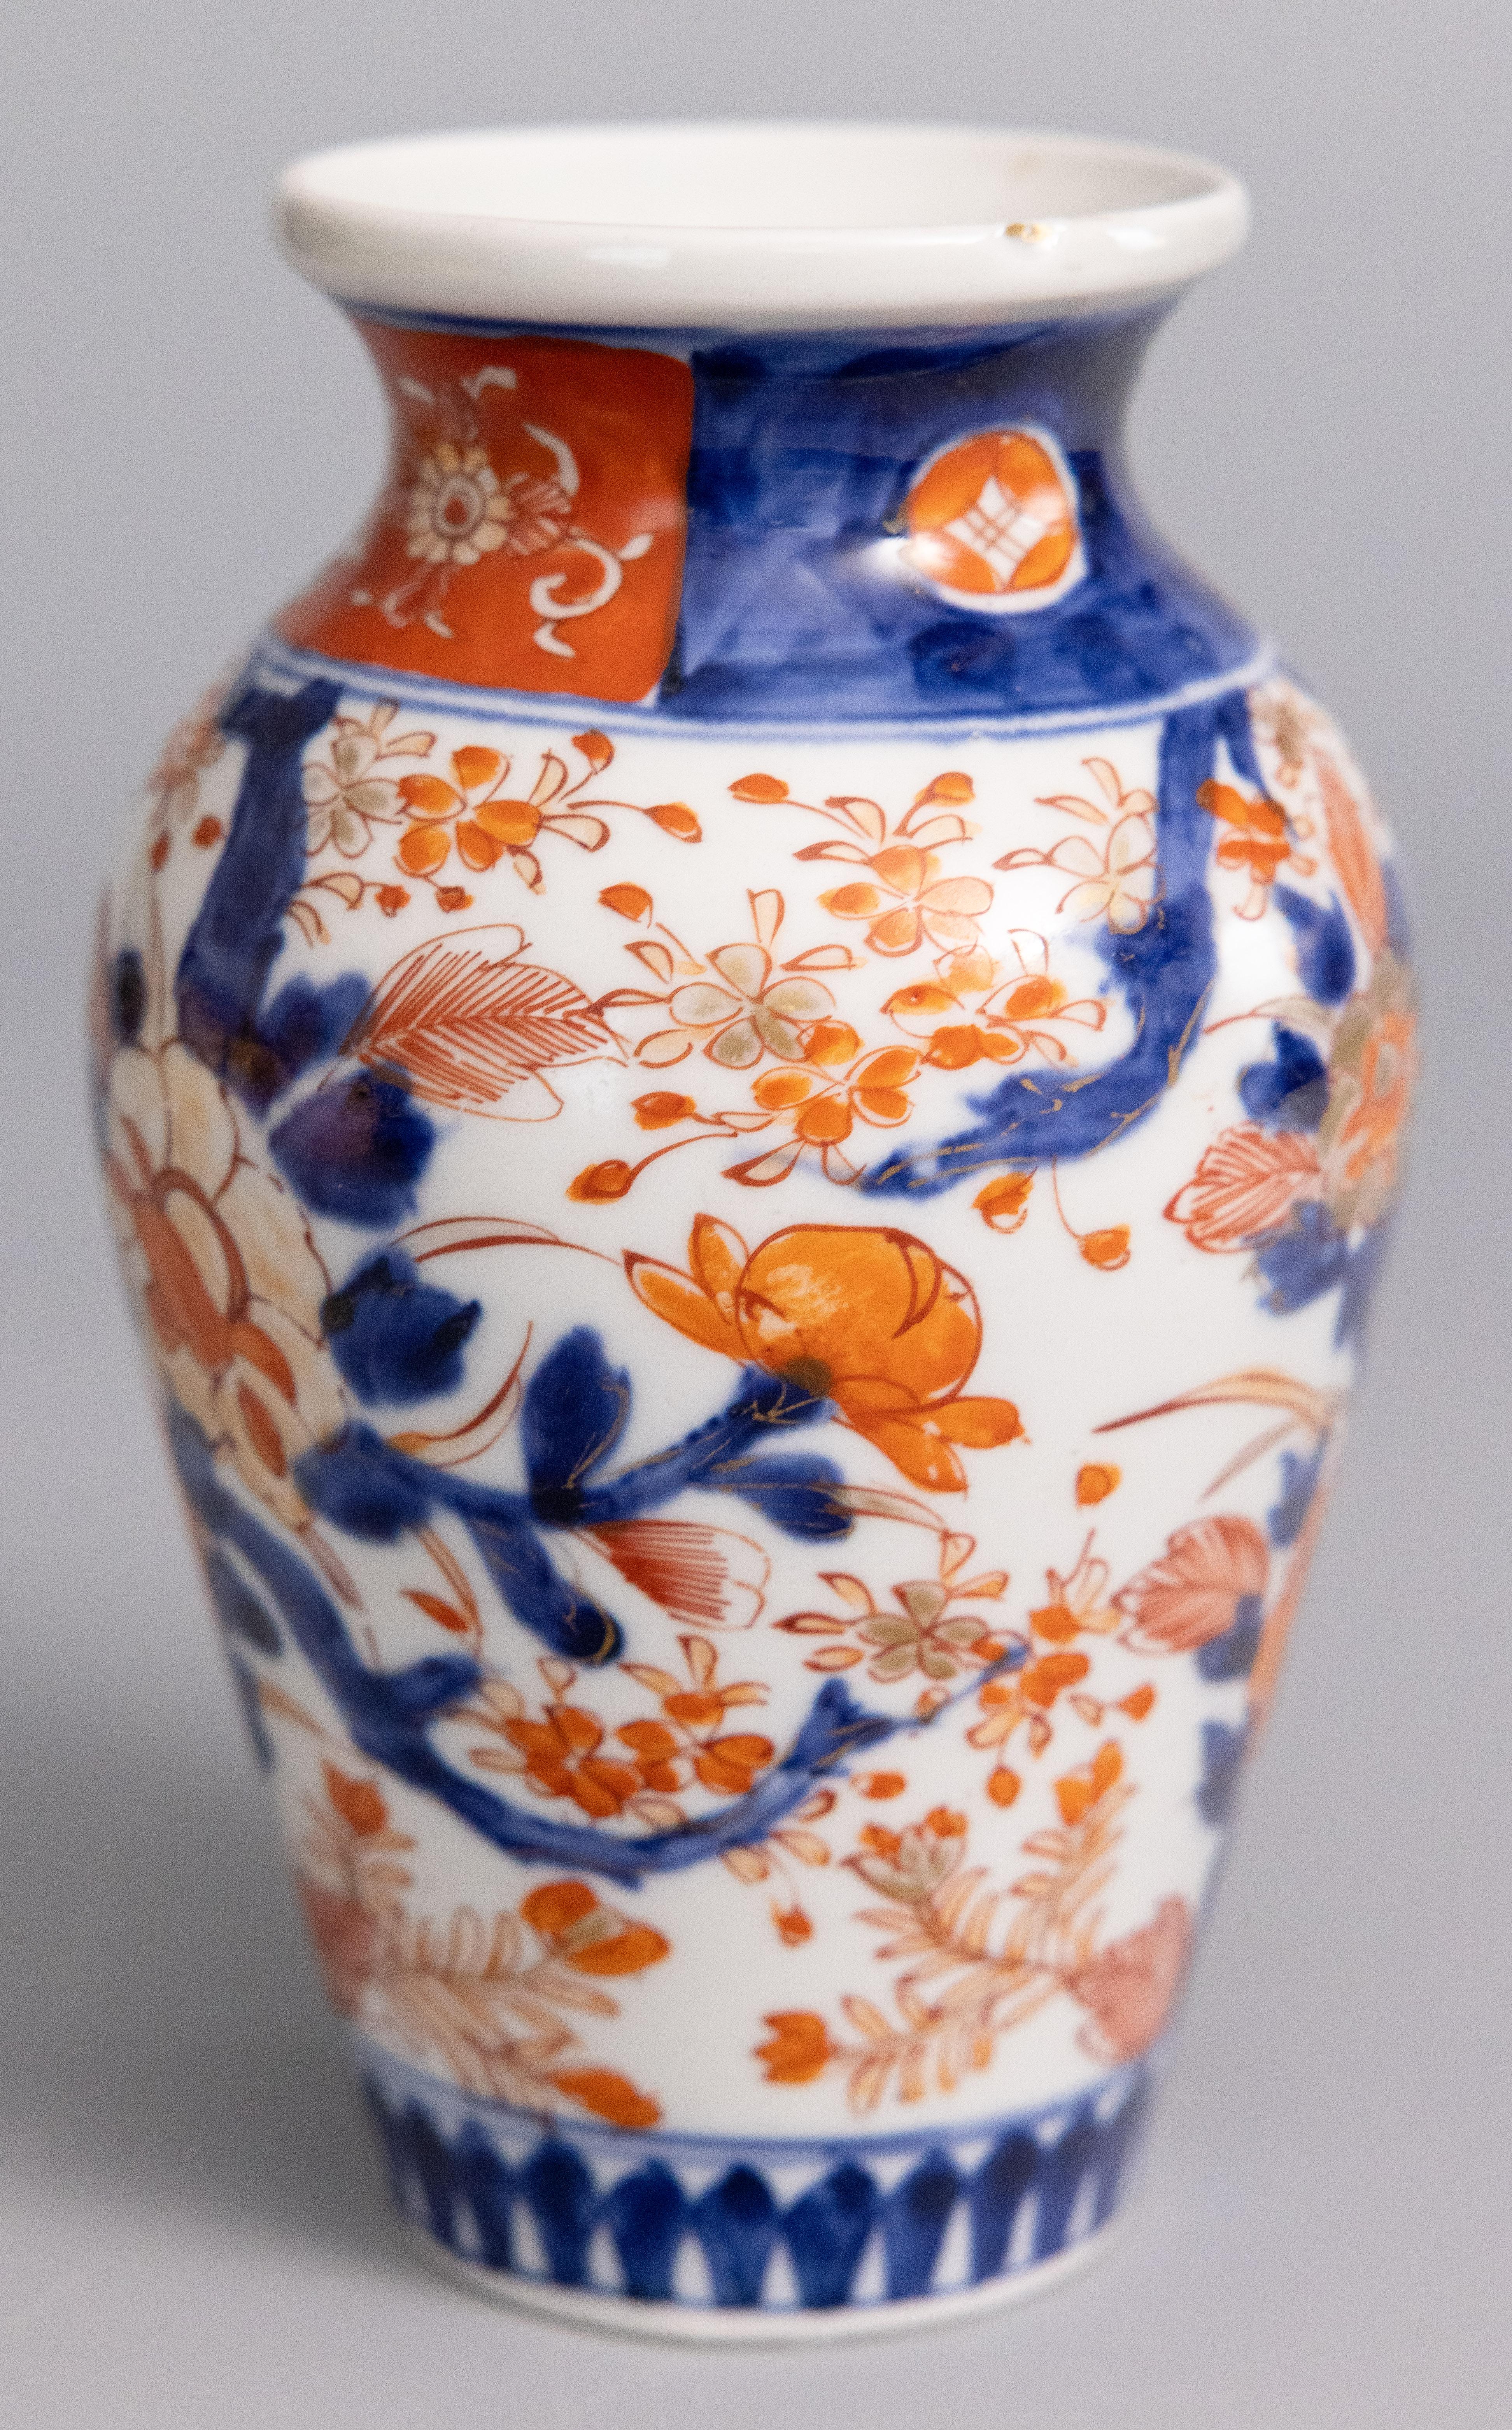 Vase en porcelaine japonaise Imari du XIXe siècle. Ce vase fin a une forme charmante et des motifs floraux peints à la main dans les couleurs traditionnelles d'Imari.